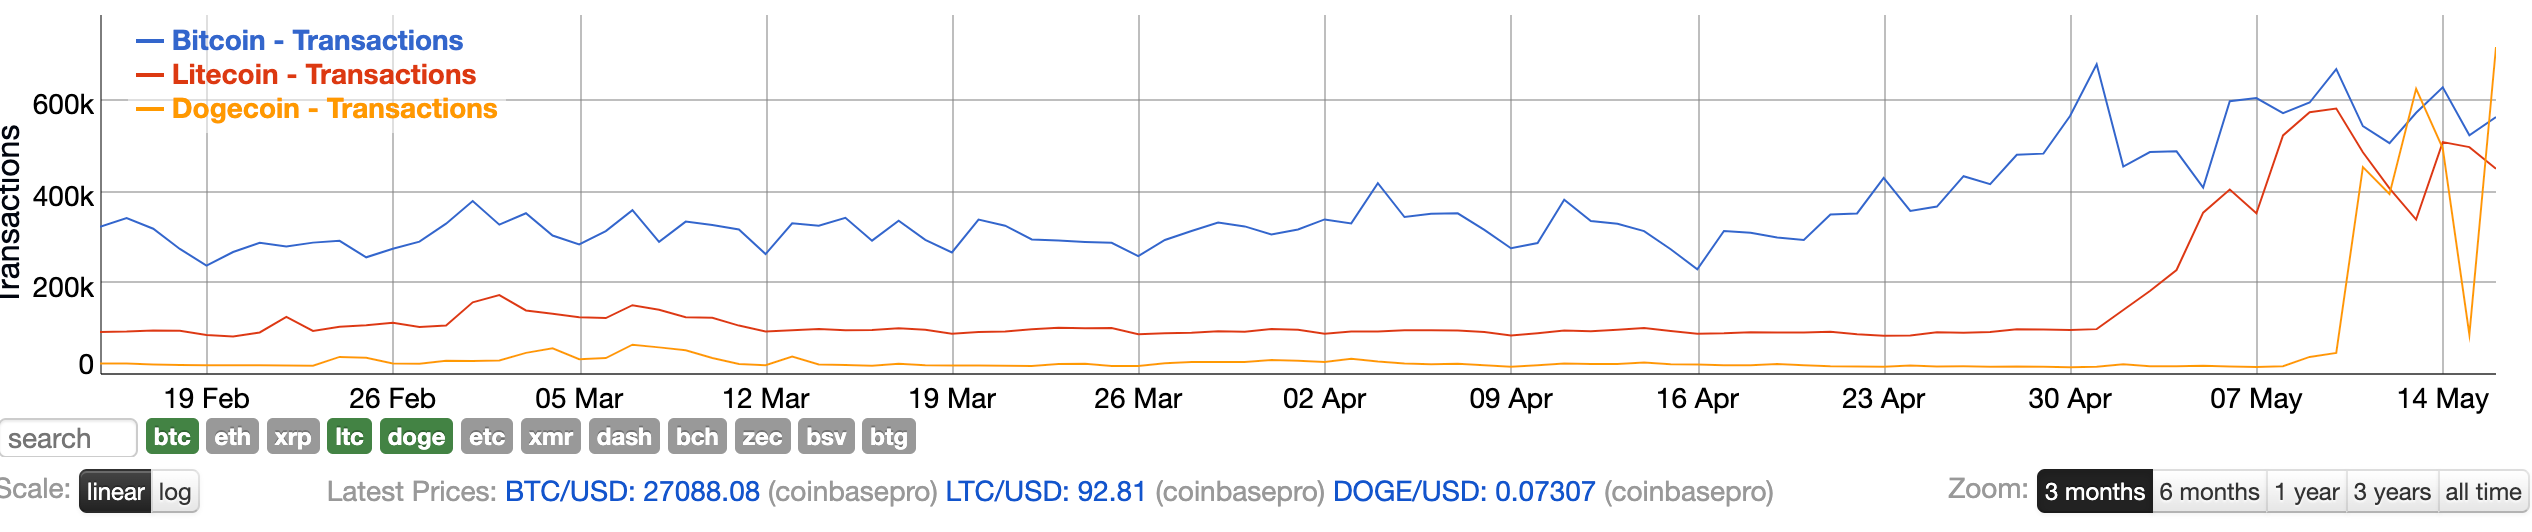 Bitcoin-Litecoin-Dogecoin-Transactions-Chart